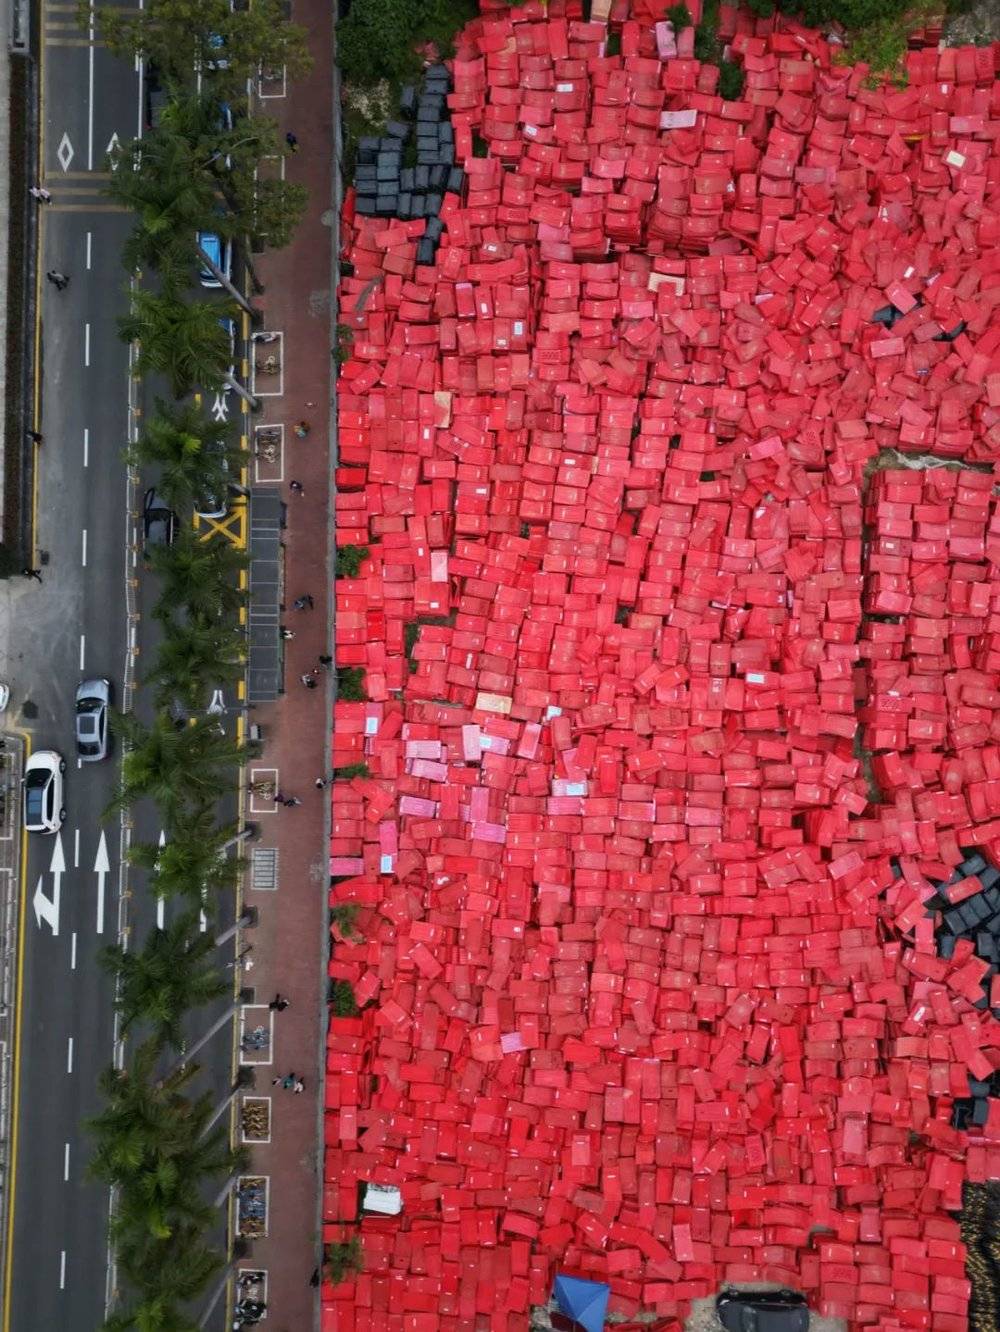 旅检大楼隔壁的空地上堆满了红色的水马。这些“退休”下来的方块，在等车接走。关于疫情的记忆，终于要告一段落了。<br>